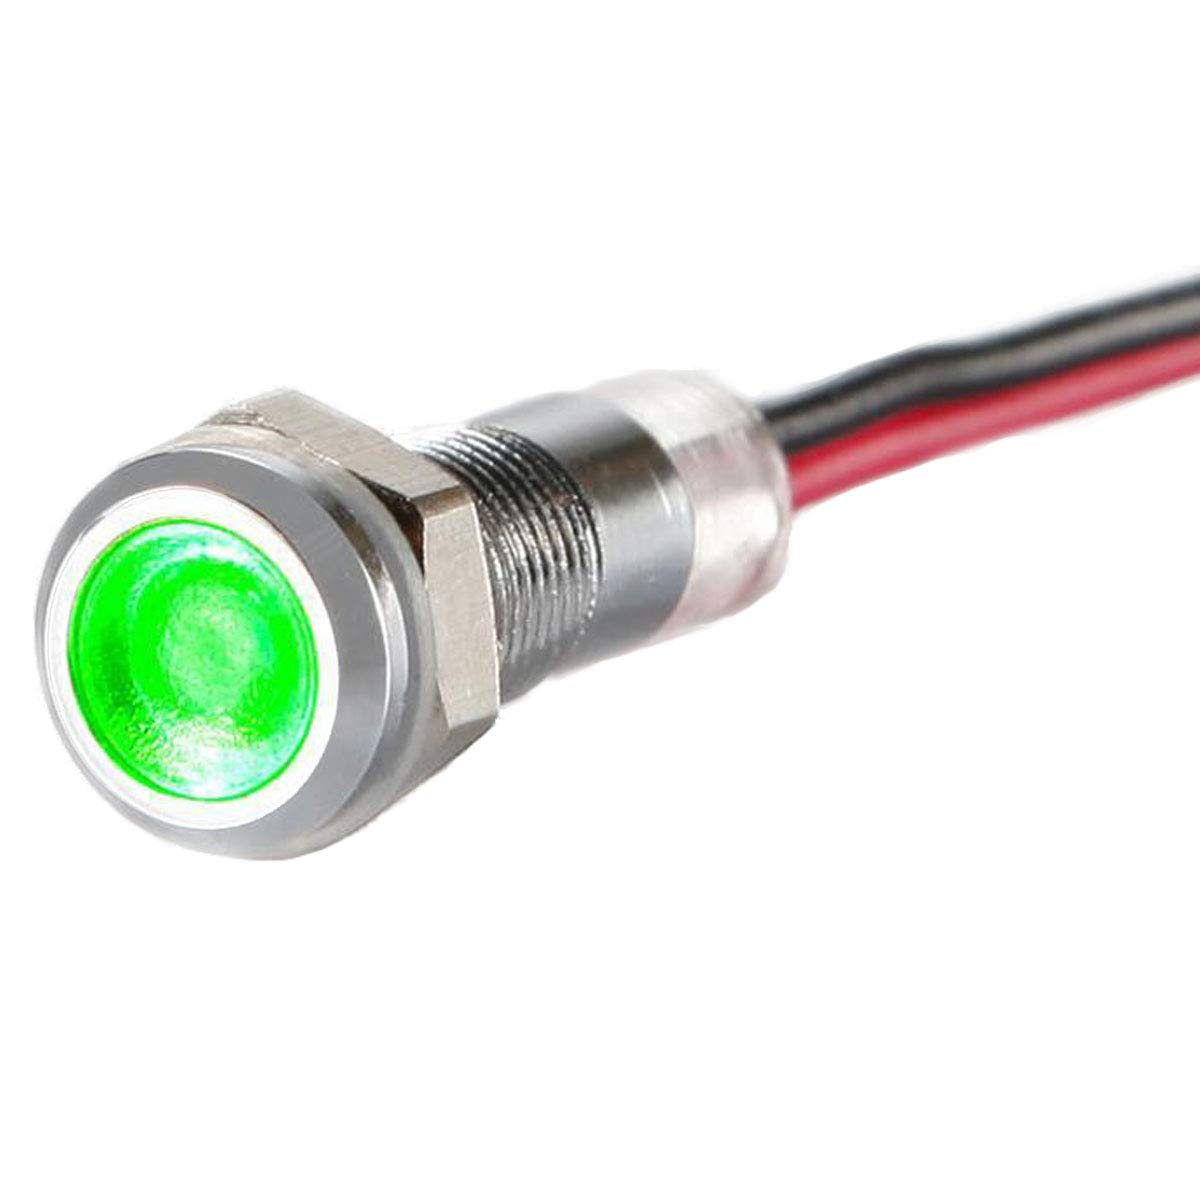 LED-Kontrollleuchte - 6 mm - V2A Edelstahl - AC/DC 6V-24V - Staub und Wasserdicht nach IP67 - Grün von Metzler